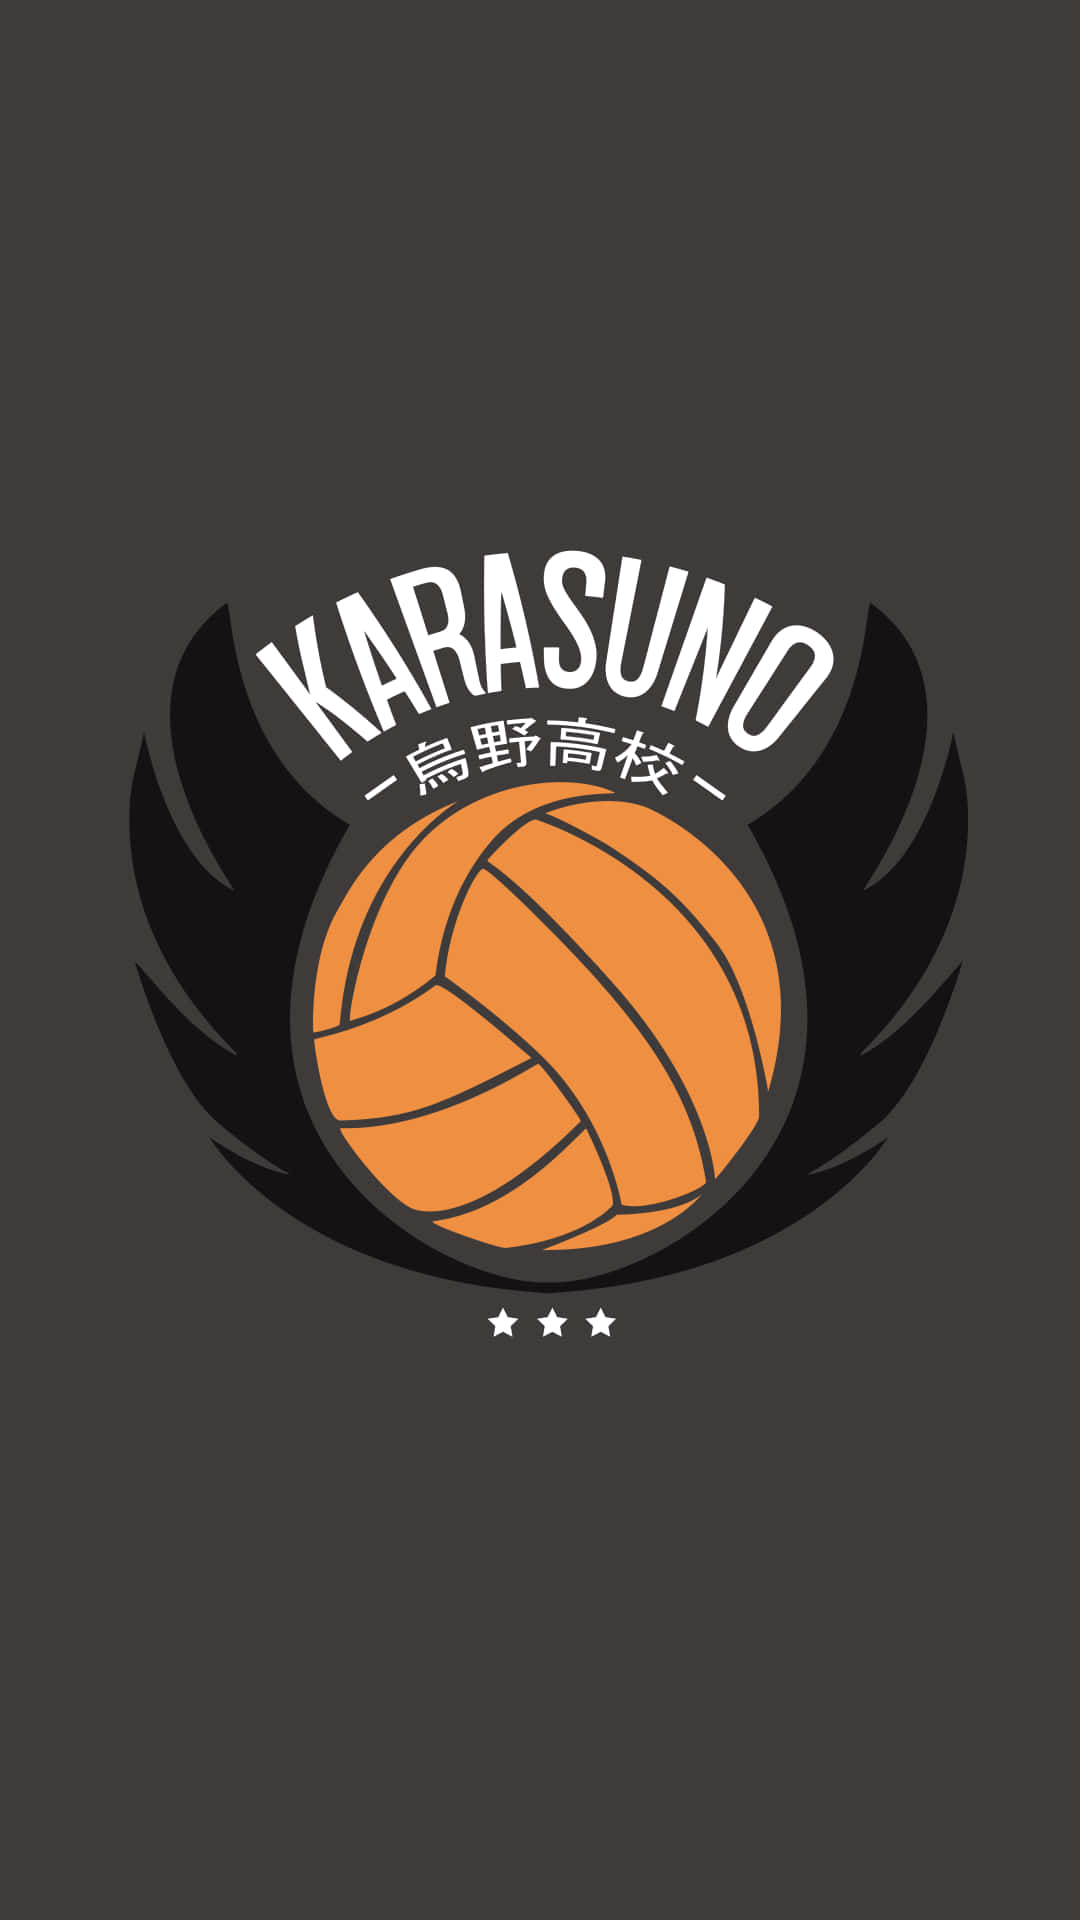 Karasunosports! Would Be Translated To 